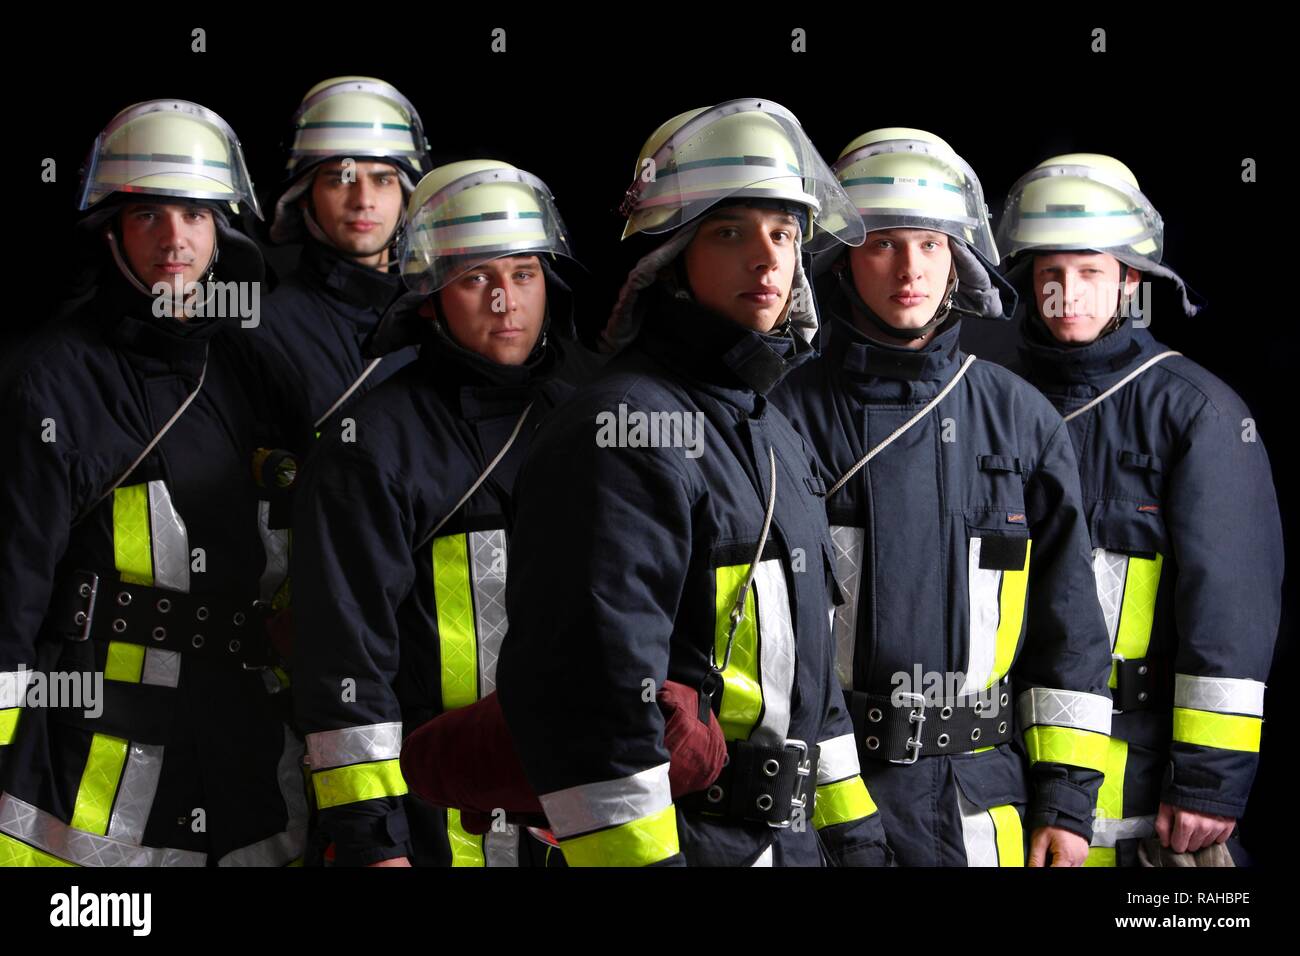 Les pompiers de porter leur uniforme pour une réponse, vêtements de protection en Nomex, un casque avec une visière, professionnel Banque D'Images